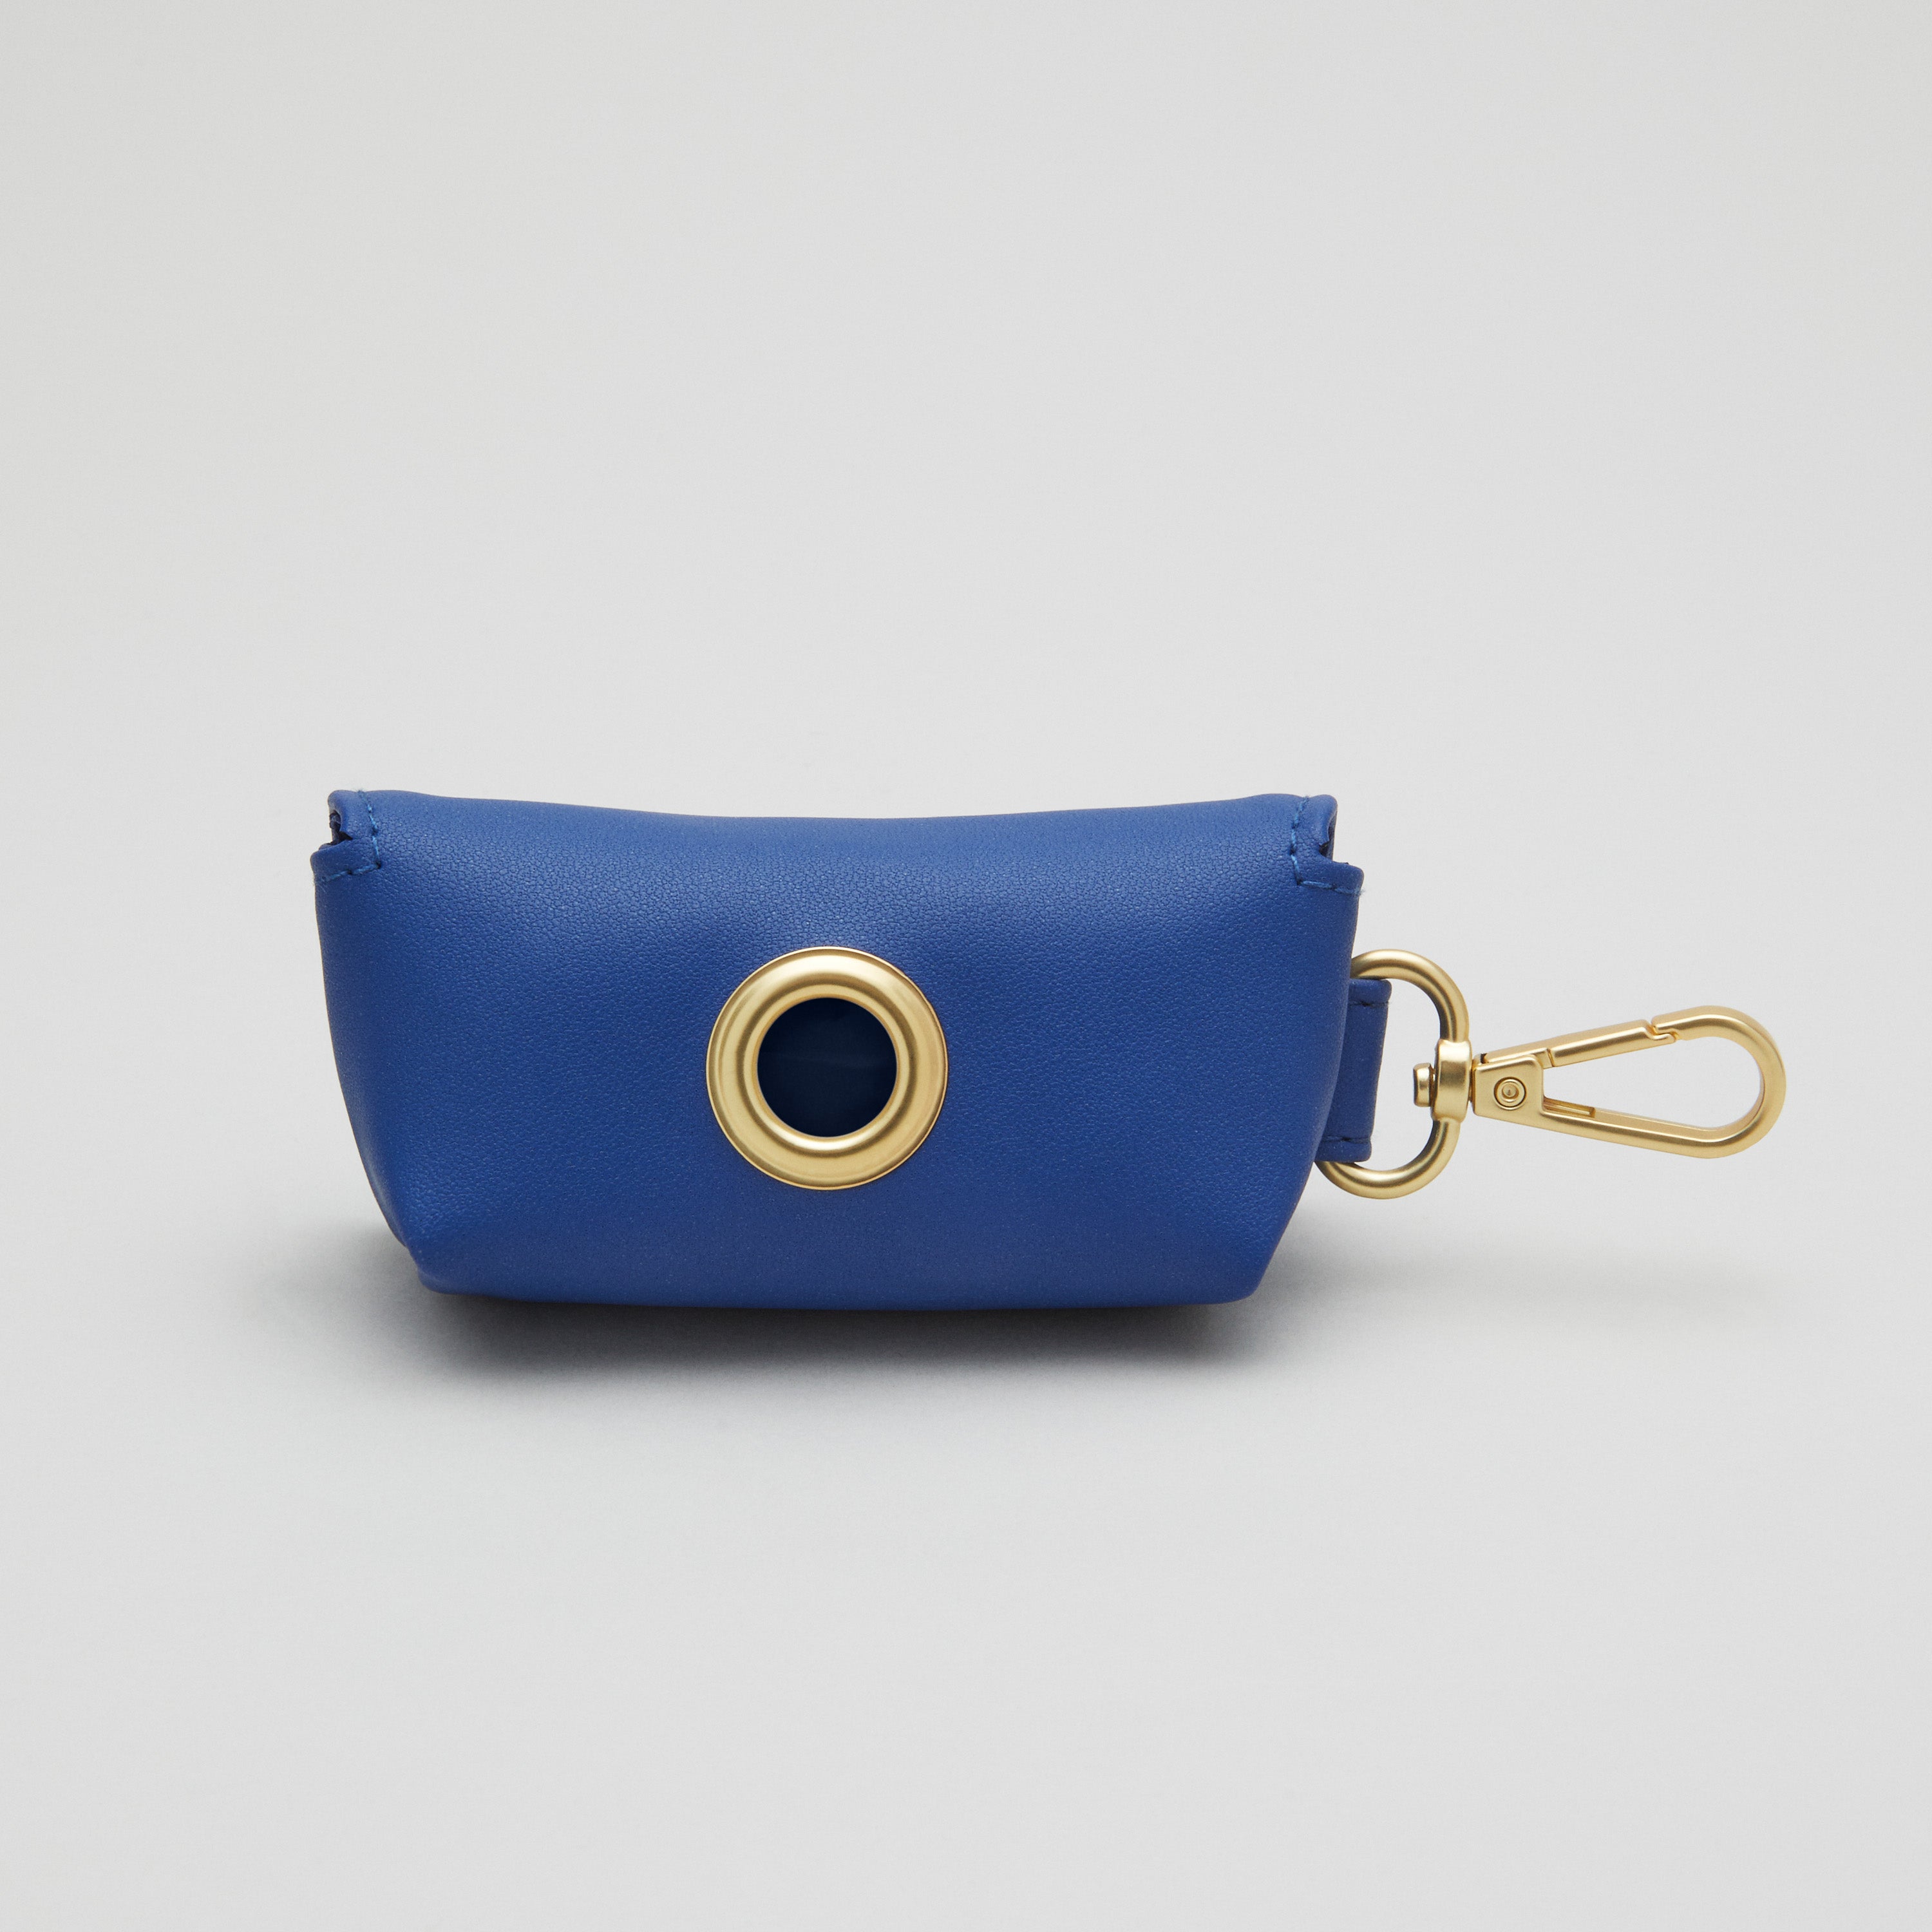 Blue Dog Collar Walk Kit + Poop Bag Holder